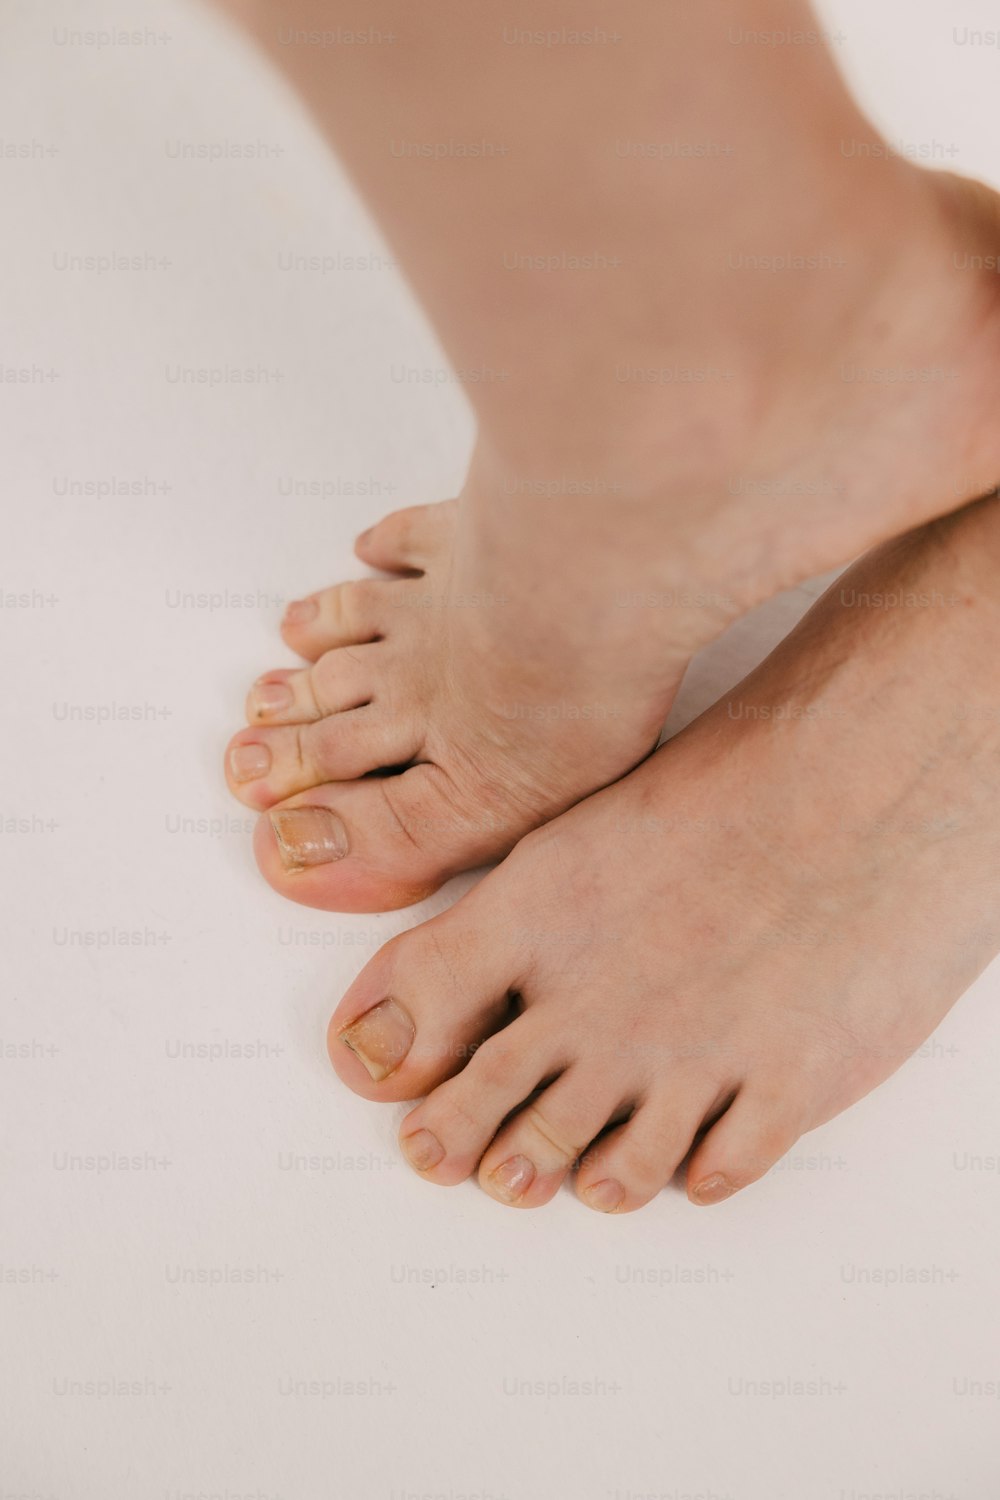 un primo piano dei piedi nudi di una persona su una superficie bianca